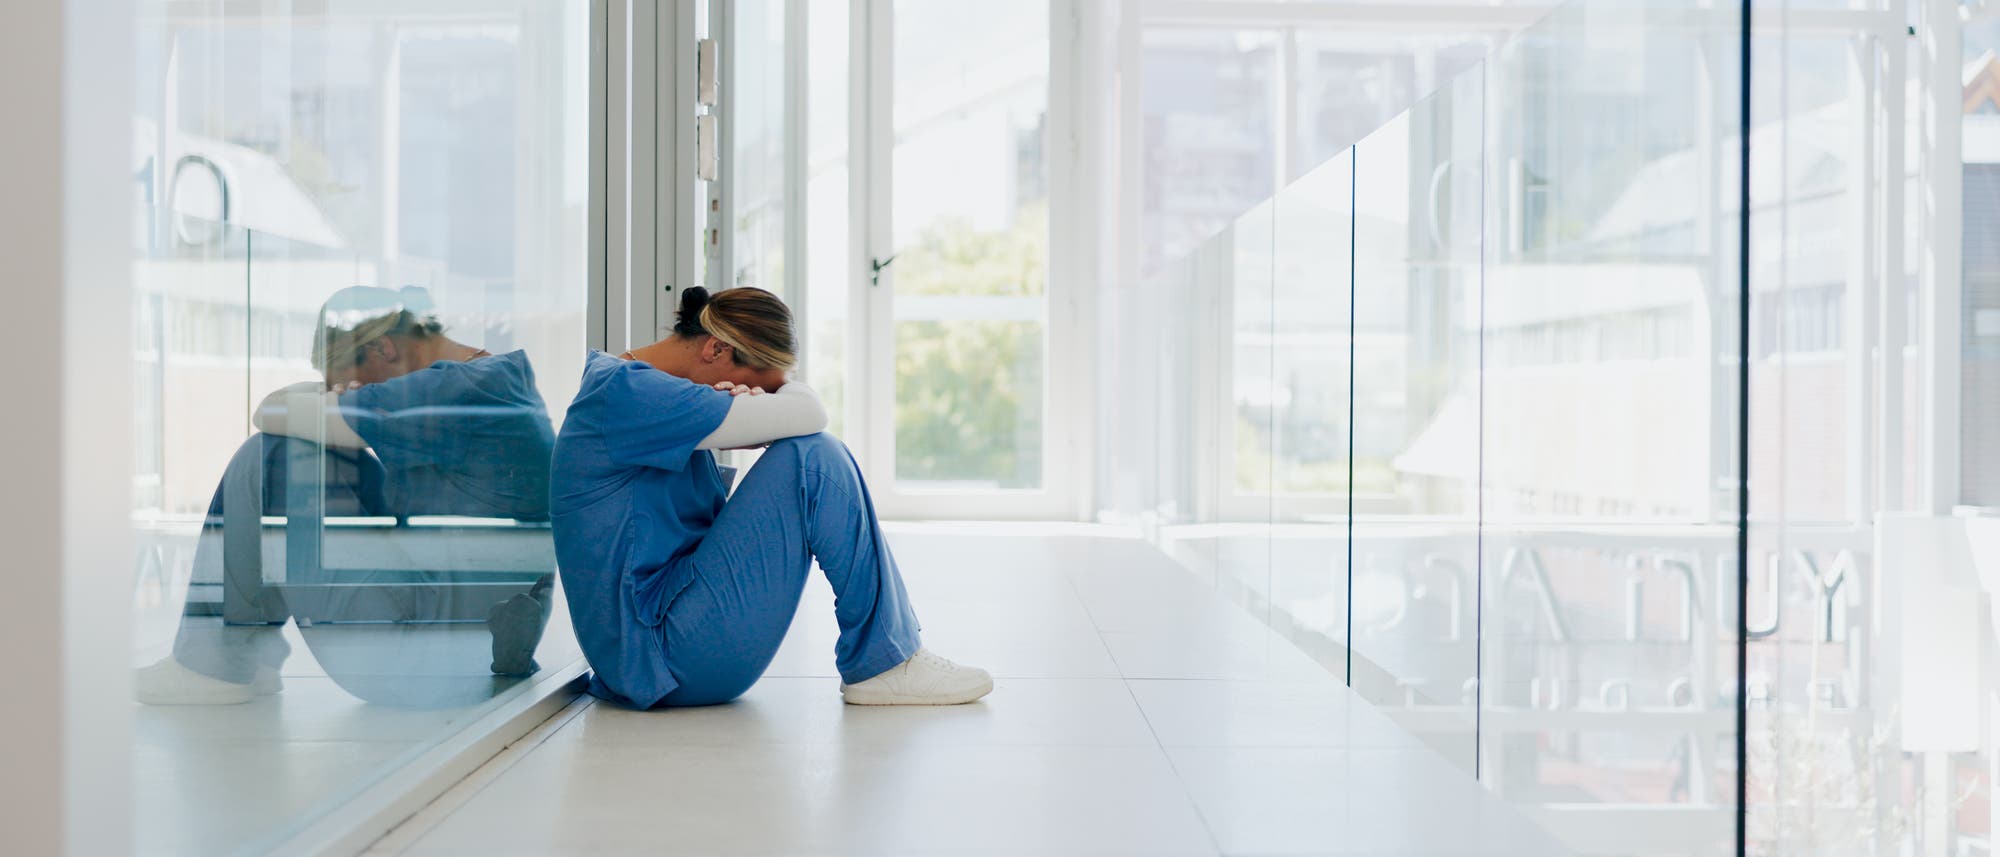 Im Flur eines Krankenhauses sitzt eine Ärztin oder Krankenschwester mit gesenktem Kopf auf dem Boden